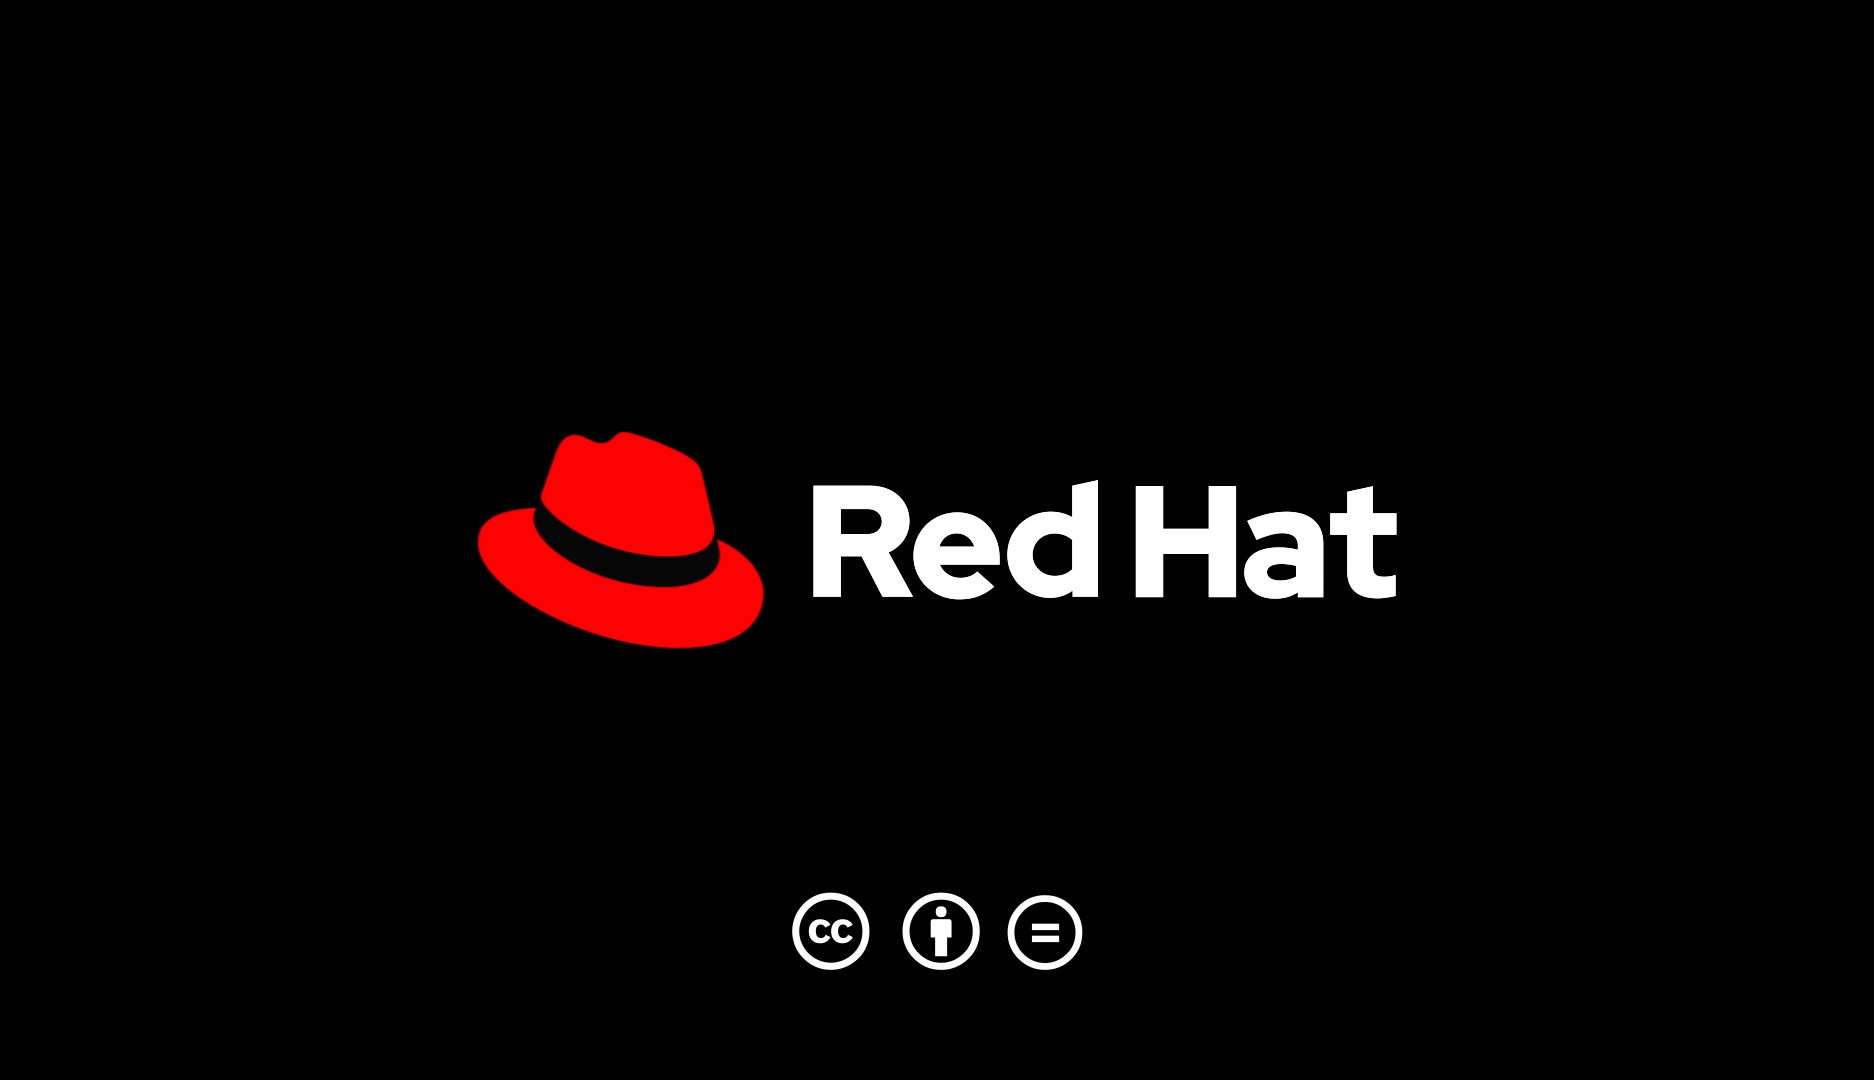 Red Hat logo standards